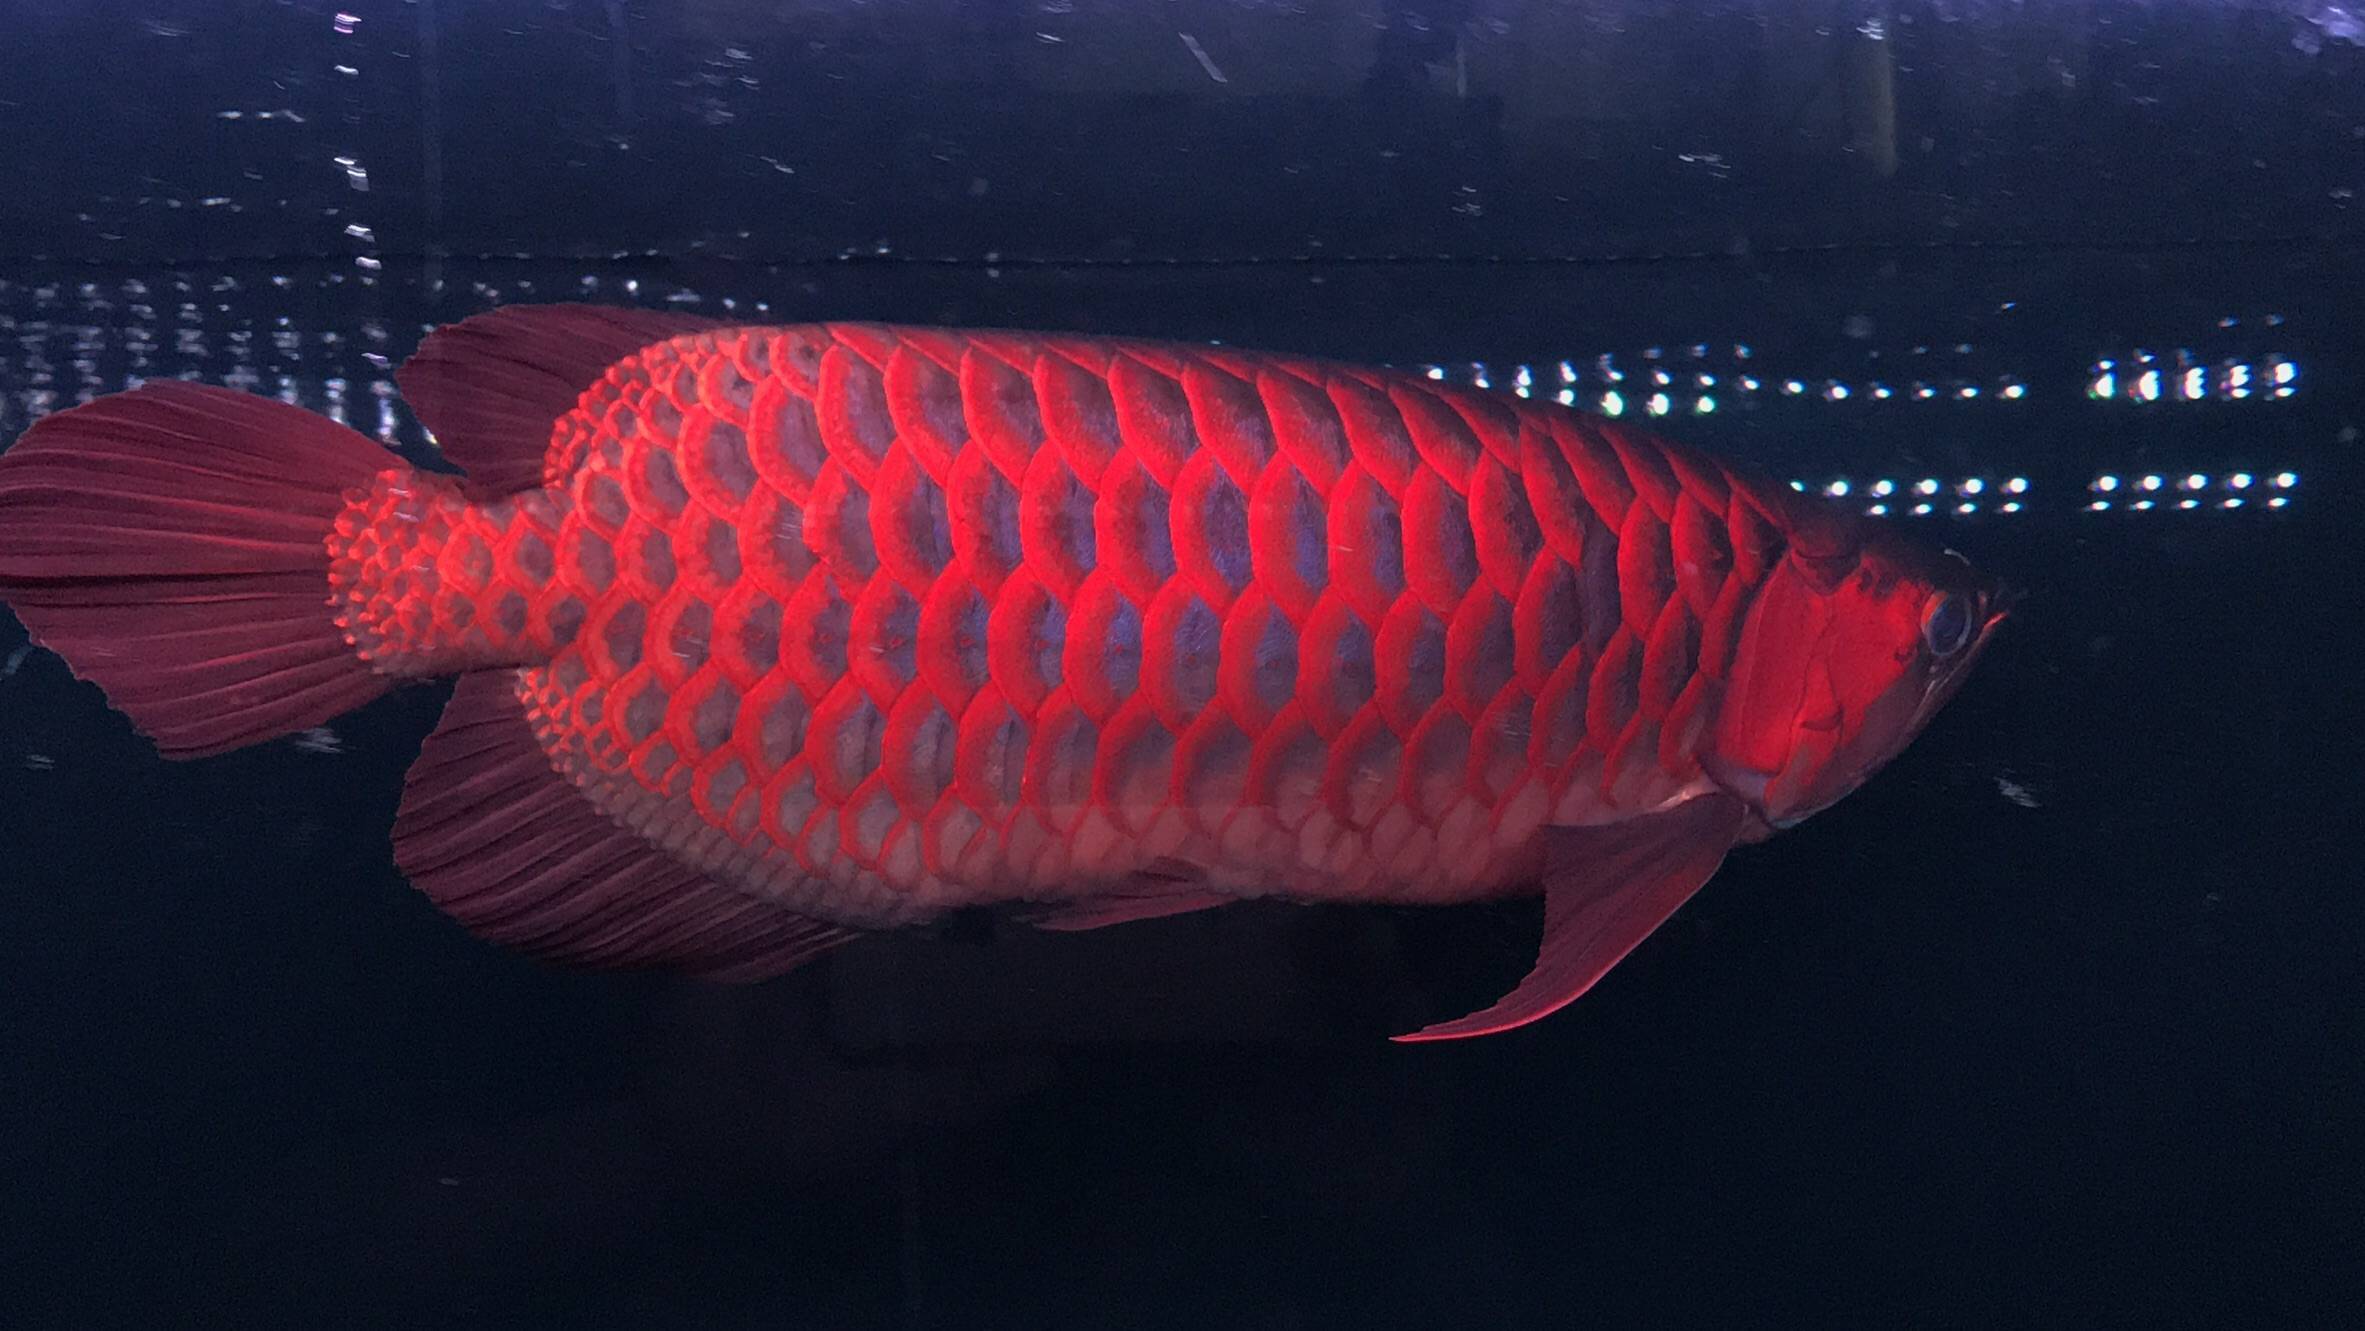 红龙鱼品种分类图片